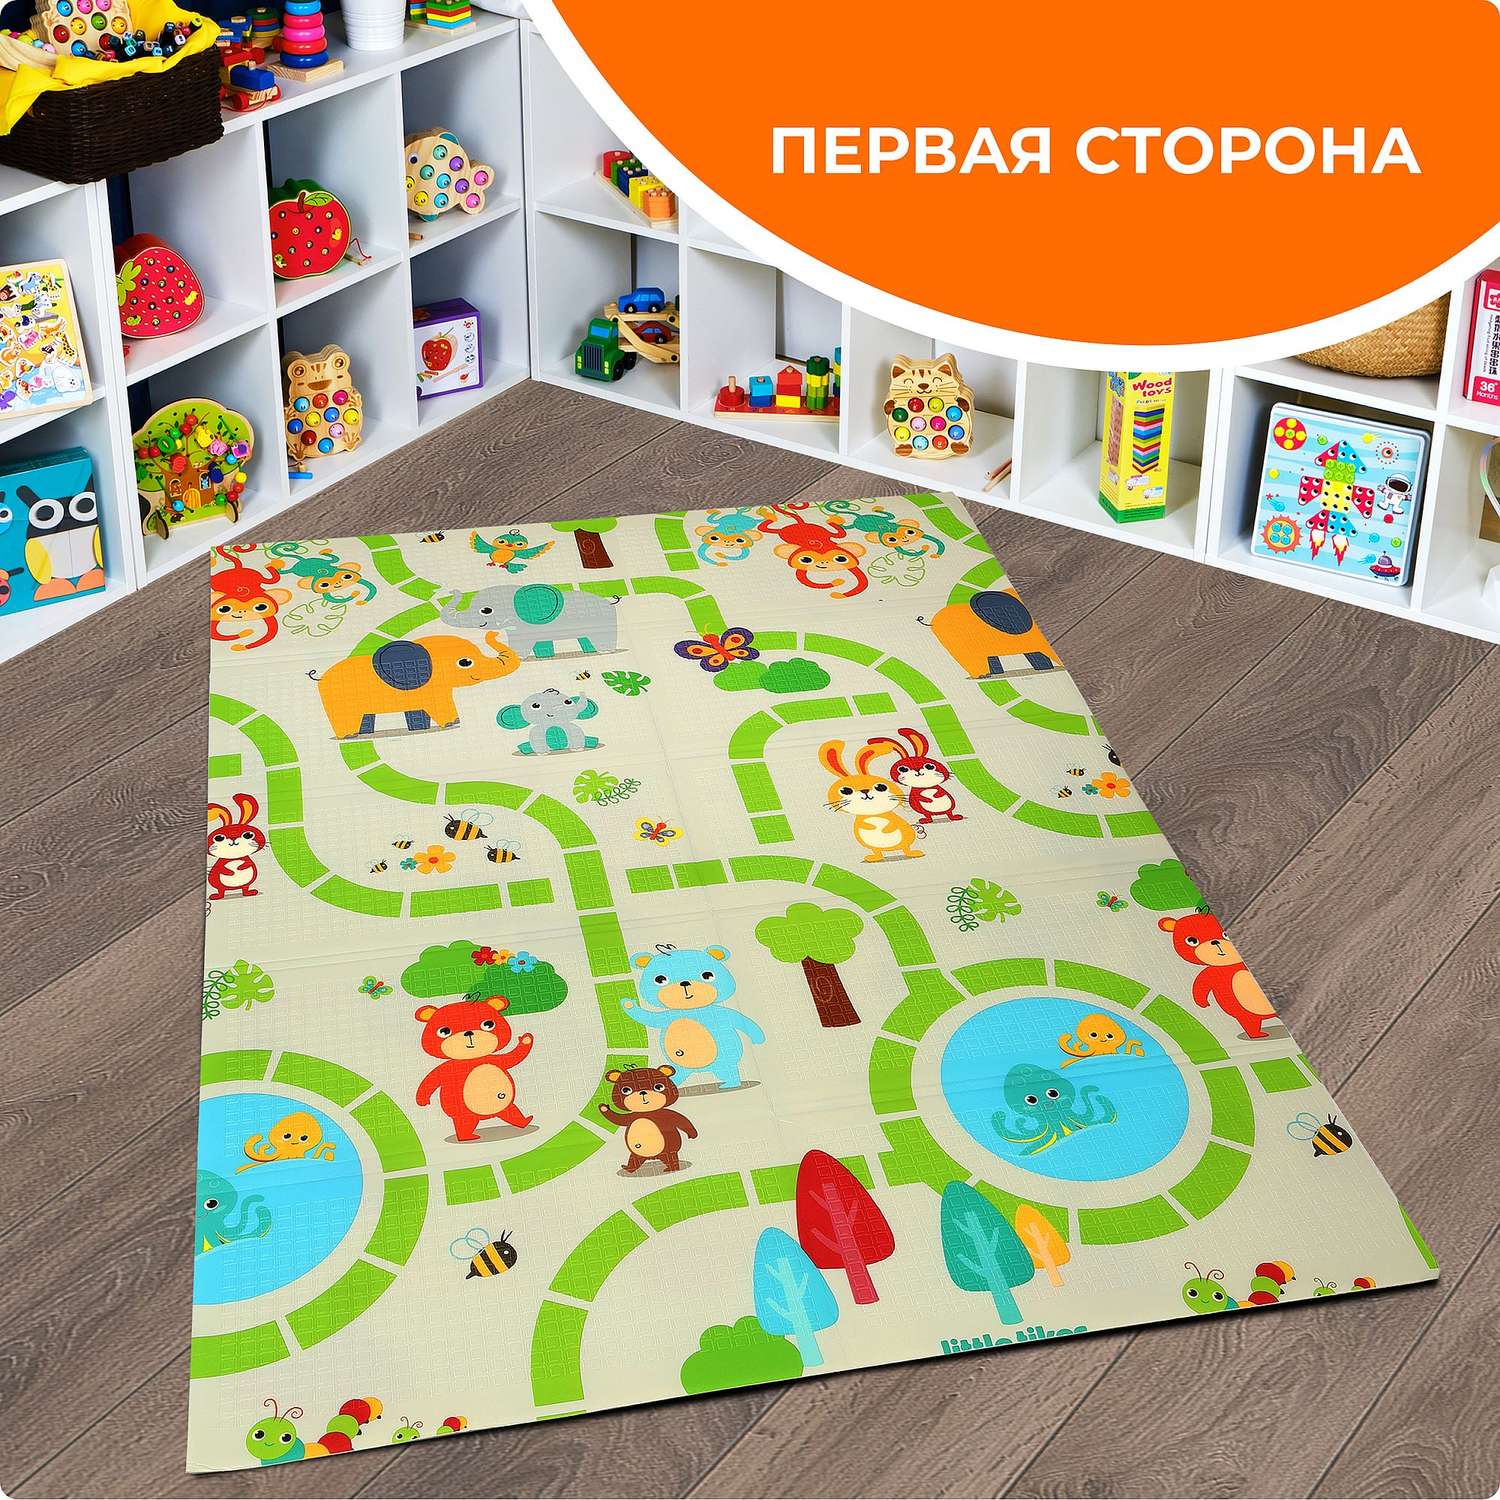 Детские коврики для ползания малышей. Купить в Москве.